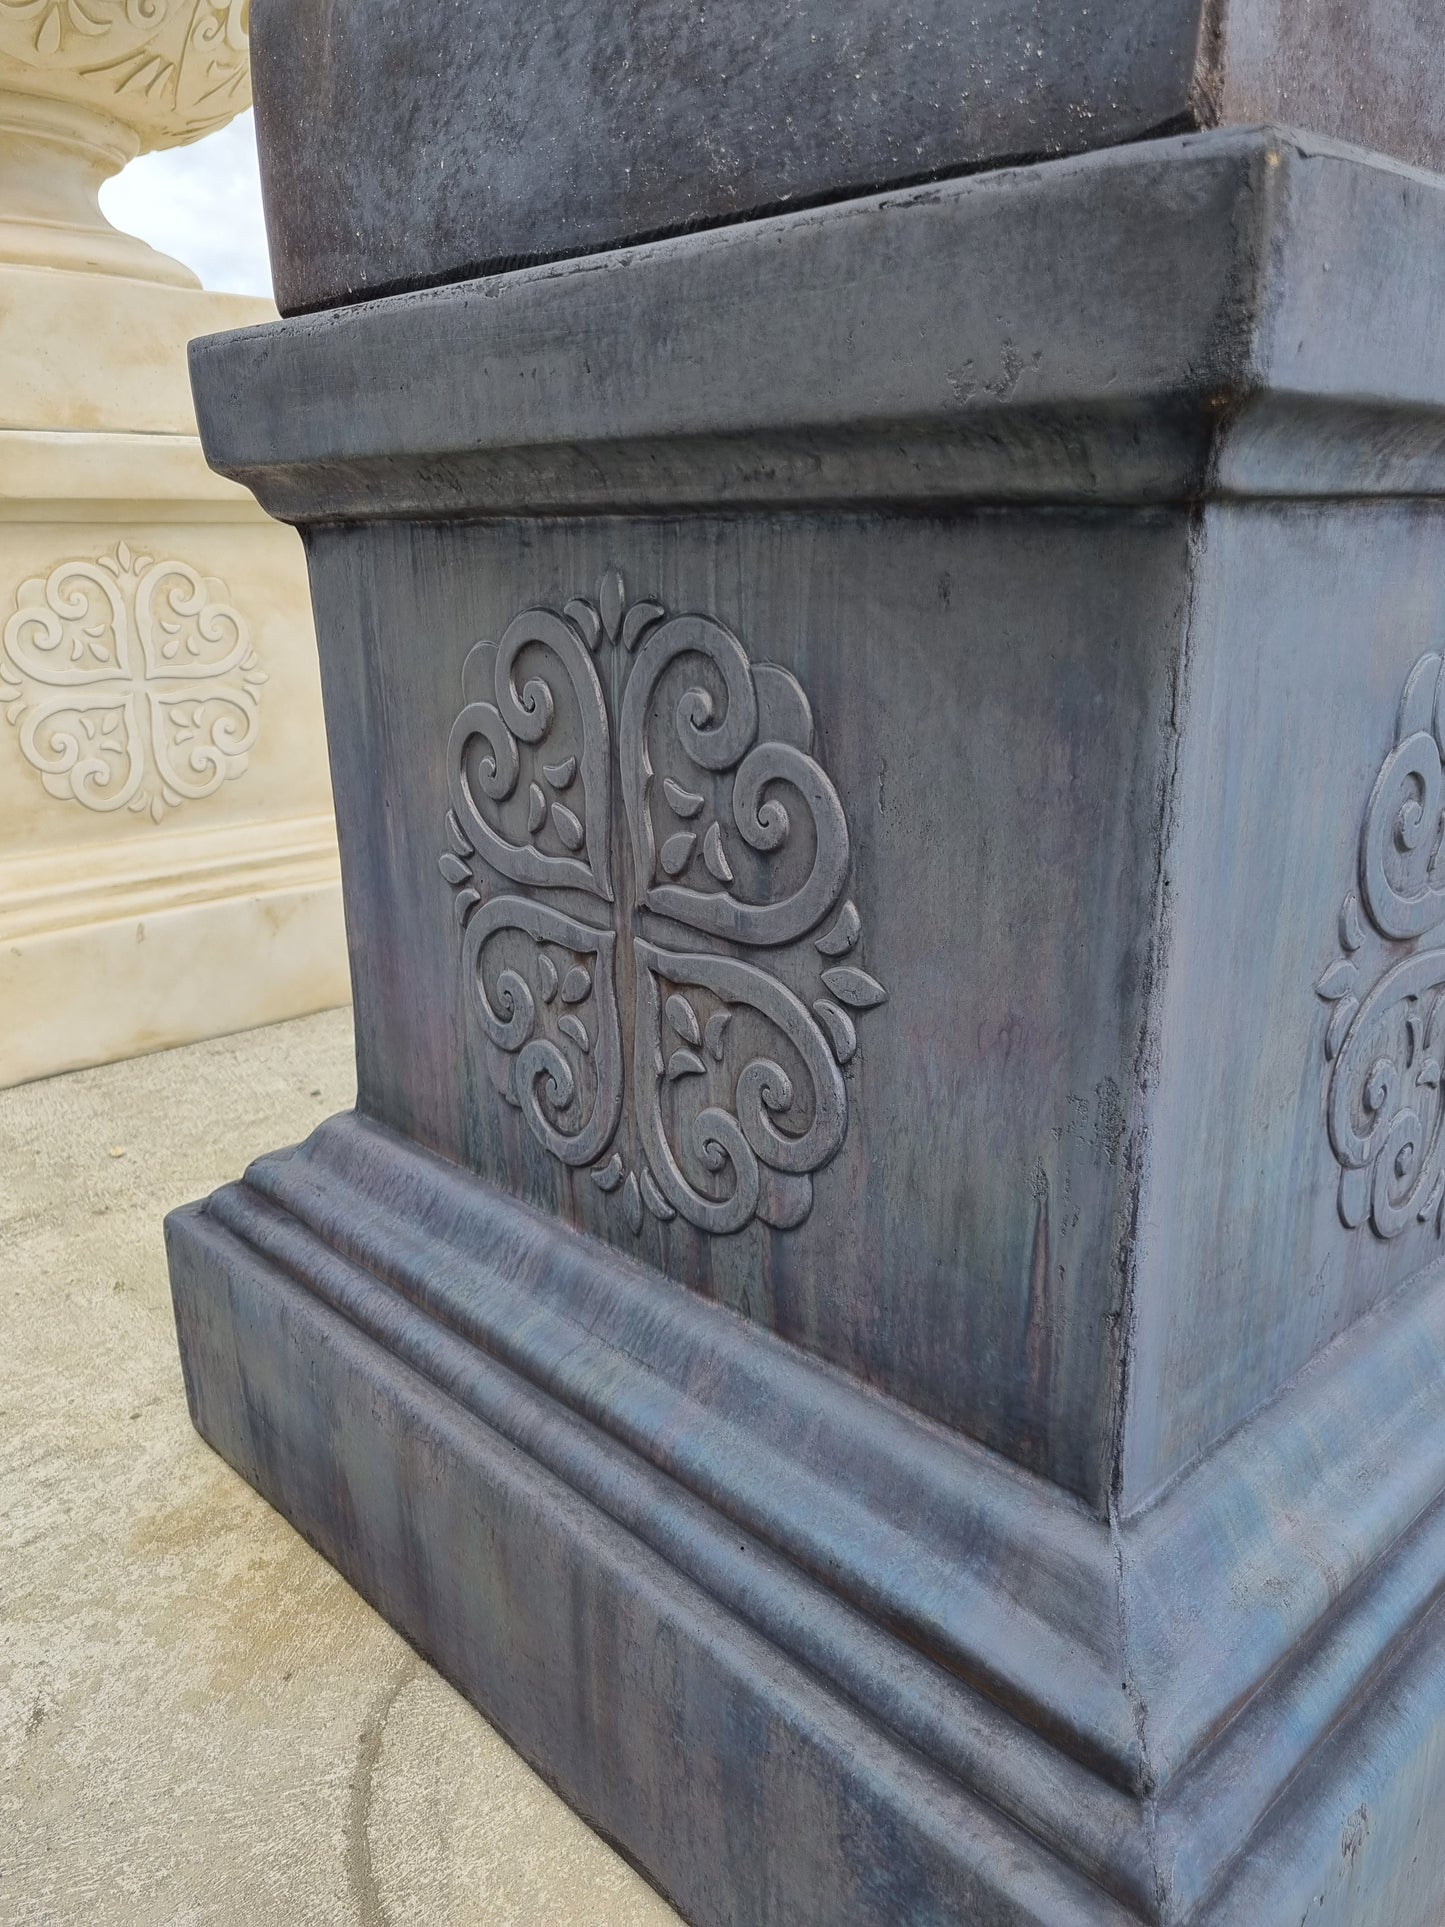 Renaissance Urn and Pedestal - Charcoal